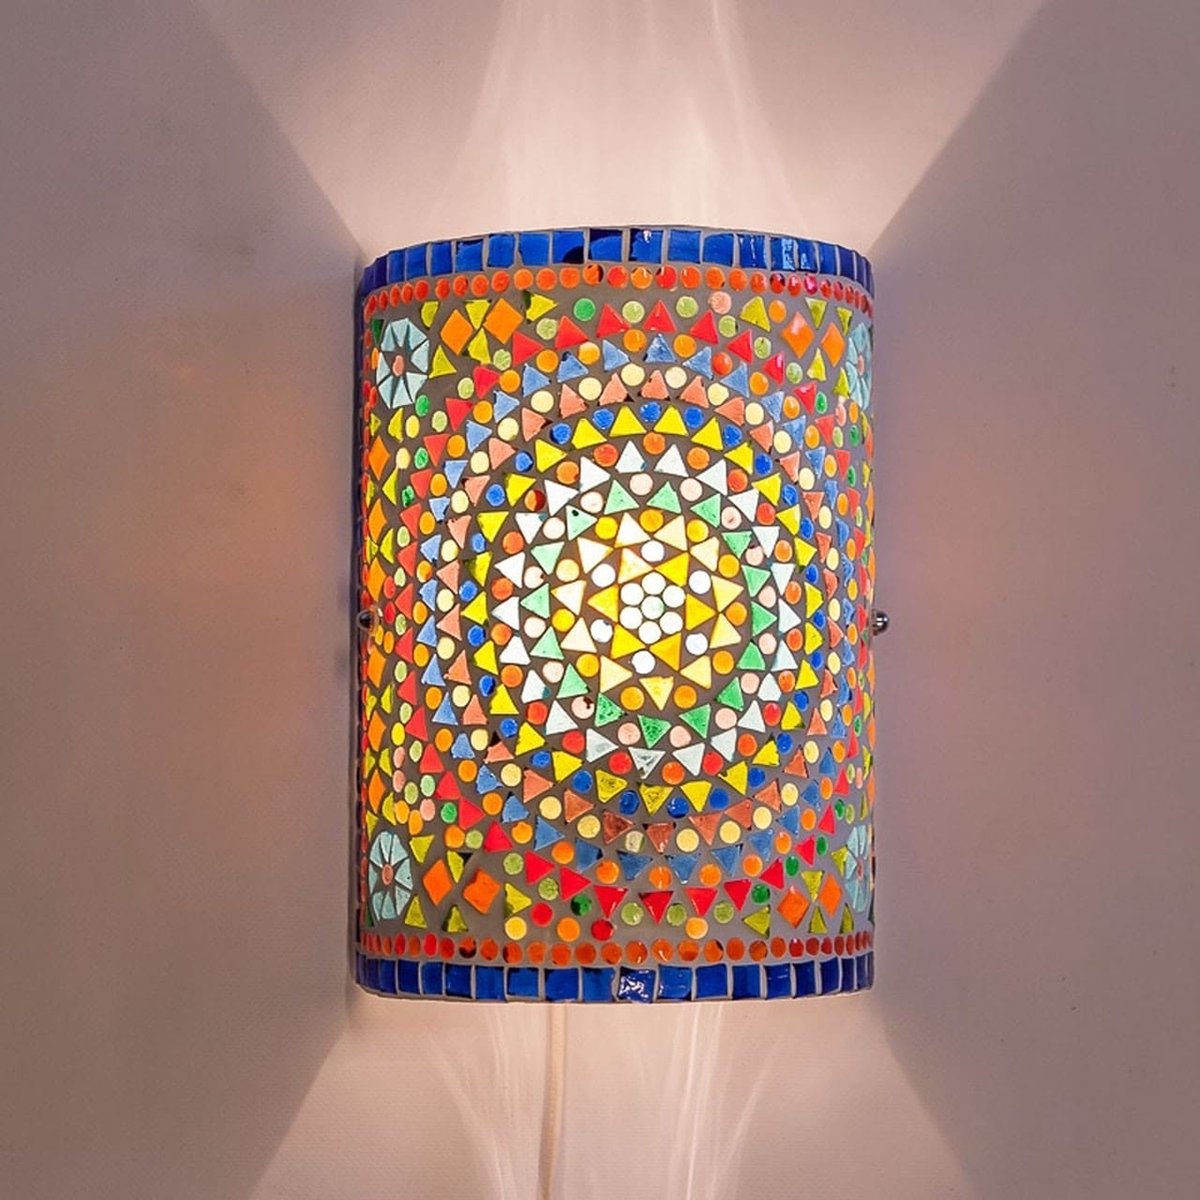 Oosterse mozaïek cilinder wandlamp | 1 lichts | meerkleurig | glas / metaal | 26 cm hoog | eetkamer / woonkamer / slaapkamer lamp | traditioneel / landelijk / sfeervol design